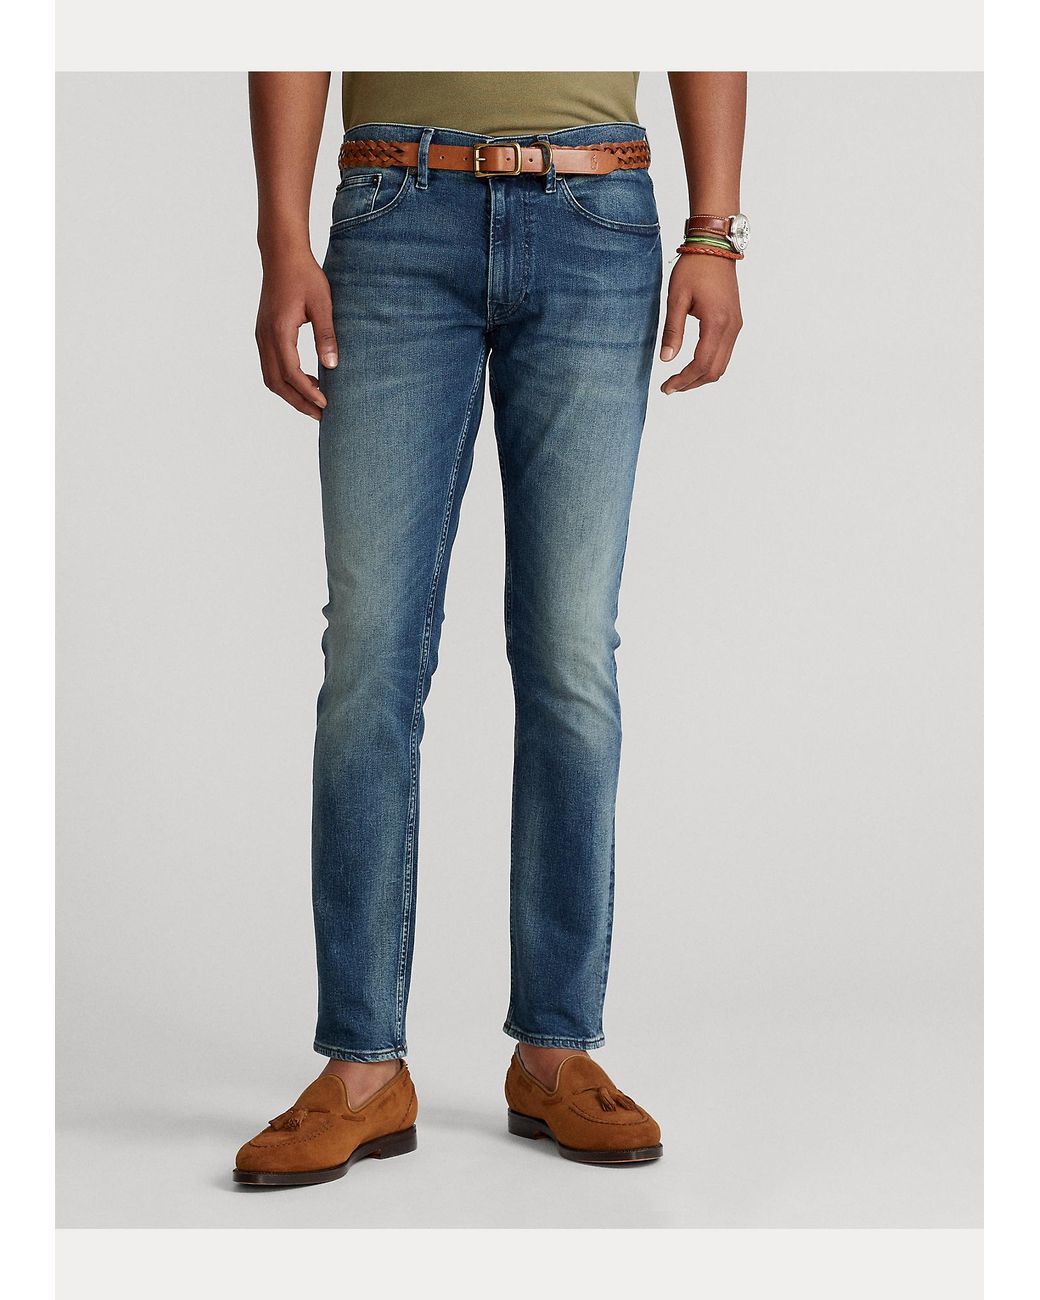 Jeans slim SullivanPolo Ralph Lauren in Denim da Uomo colore Blu Uomo Abbigliamento da Jeans da Jeans dritti 